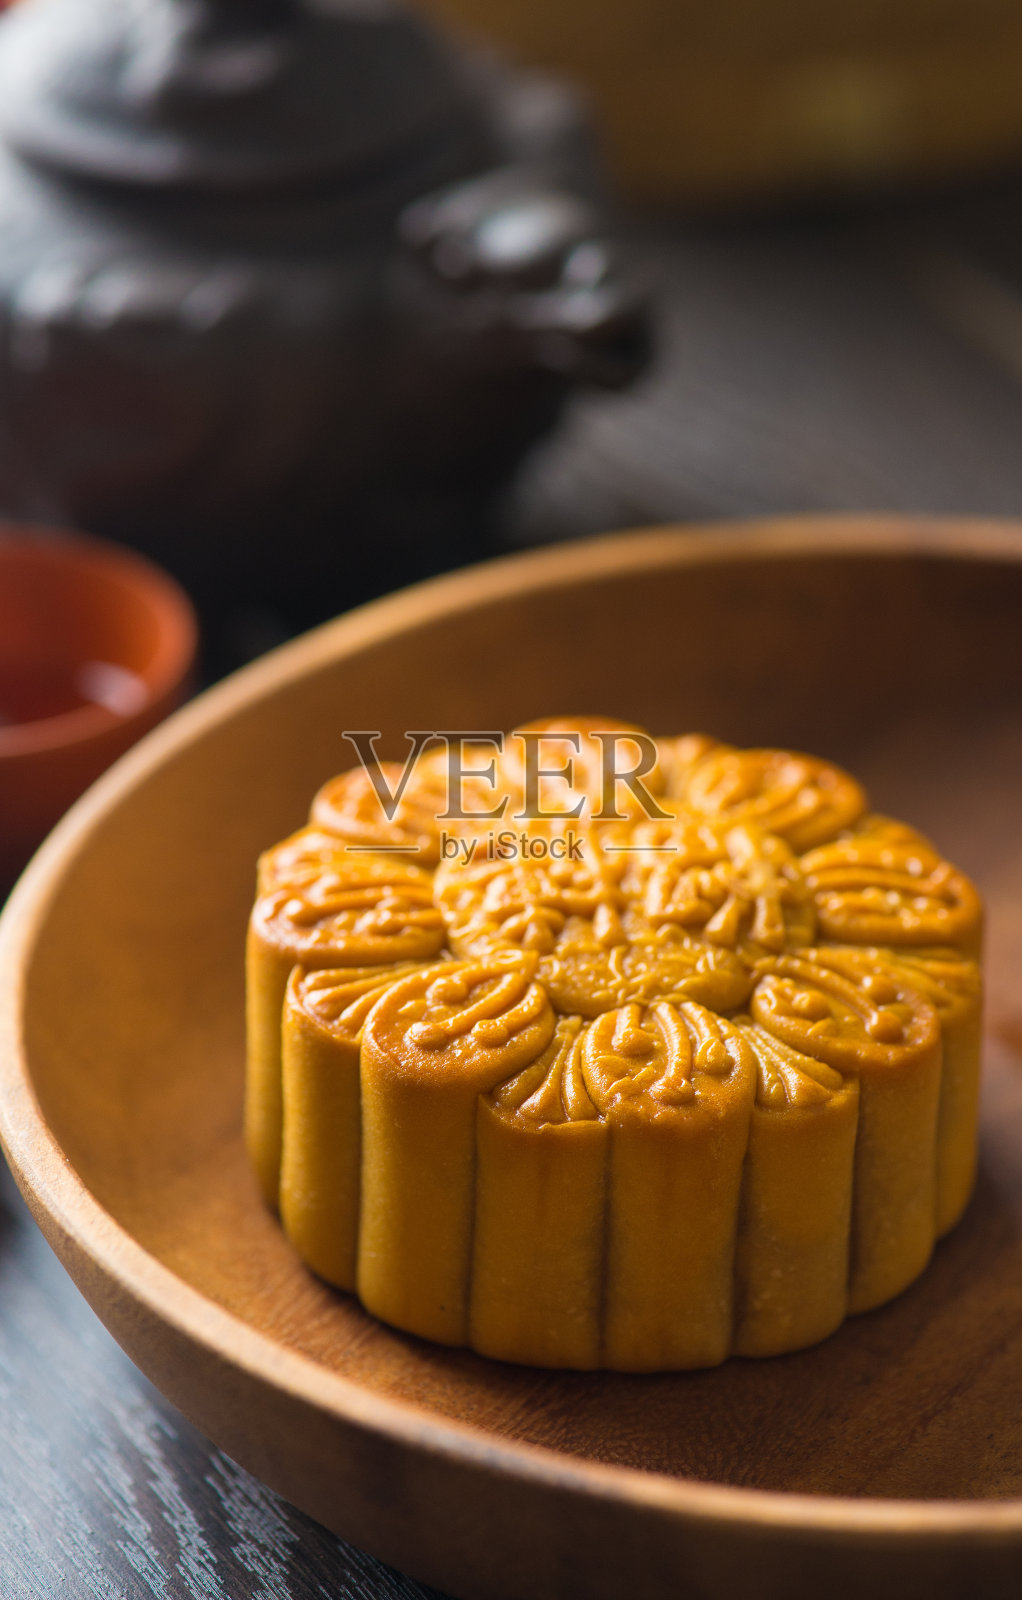 月饼是中国中秋节的食品。中国的词照片摄影图片